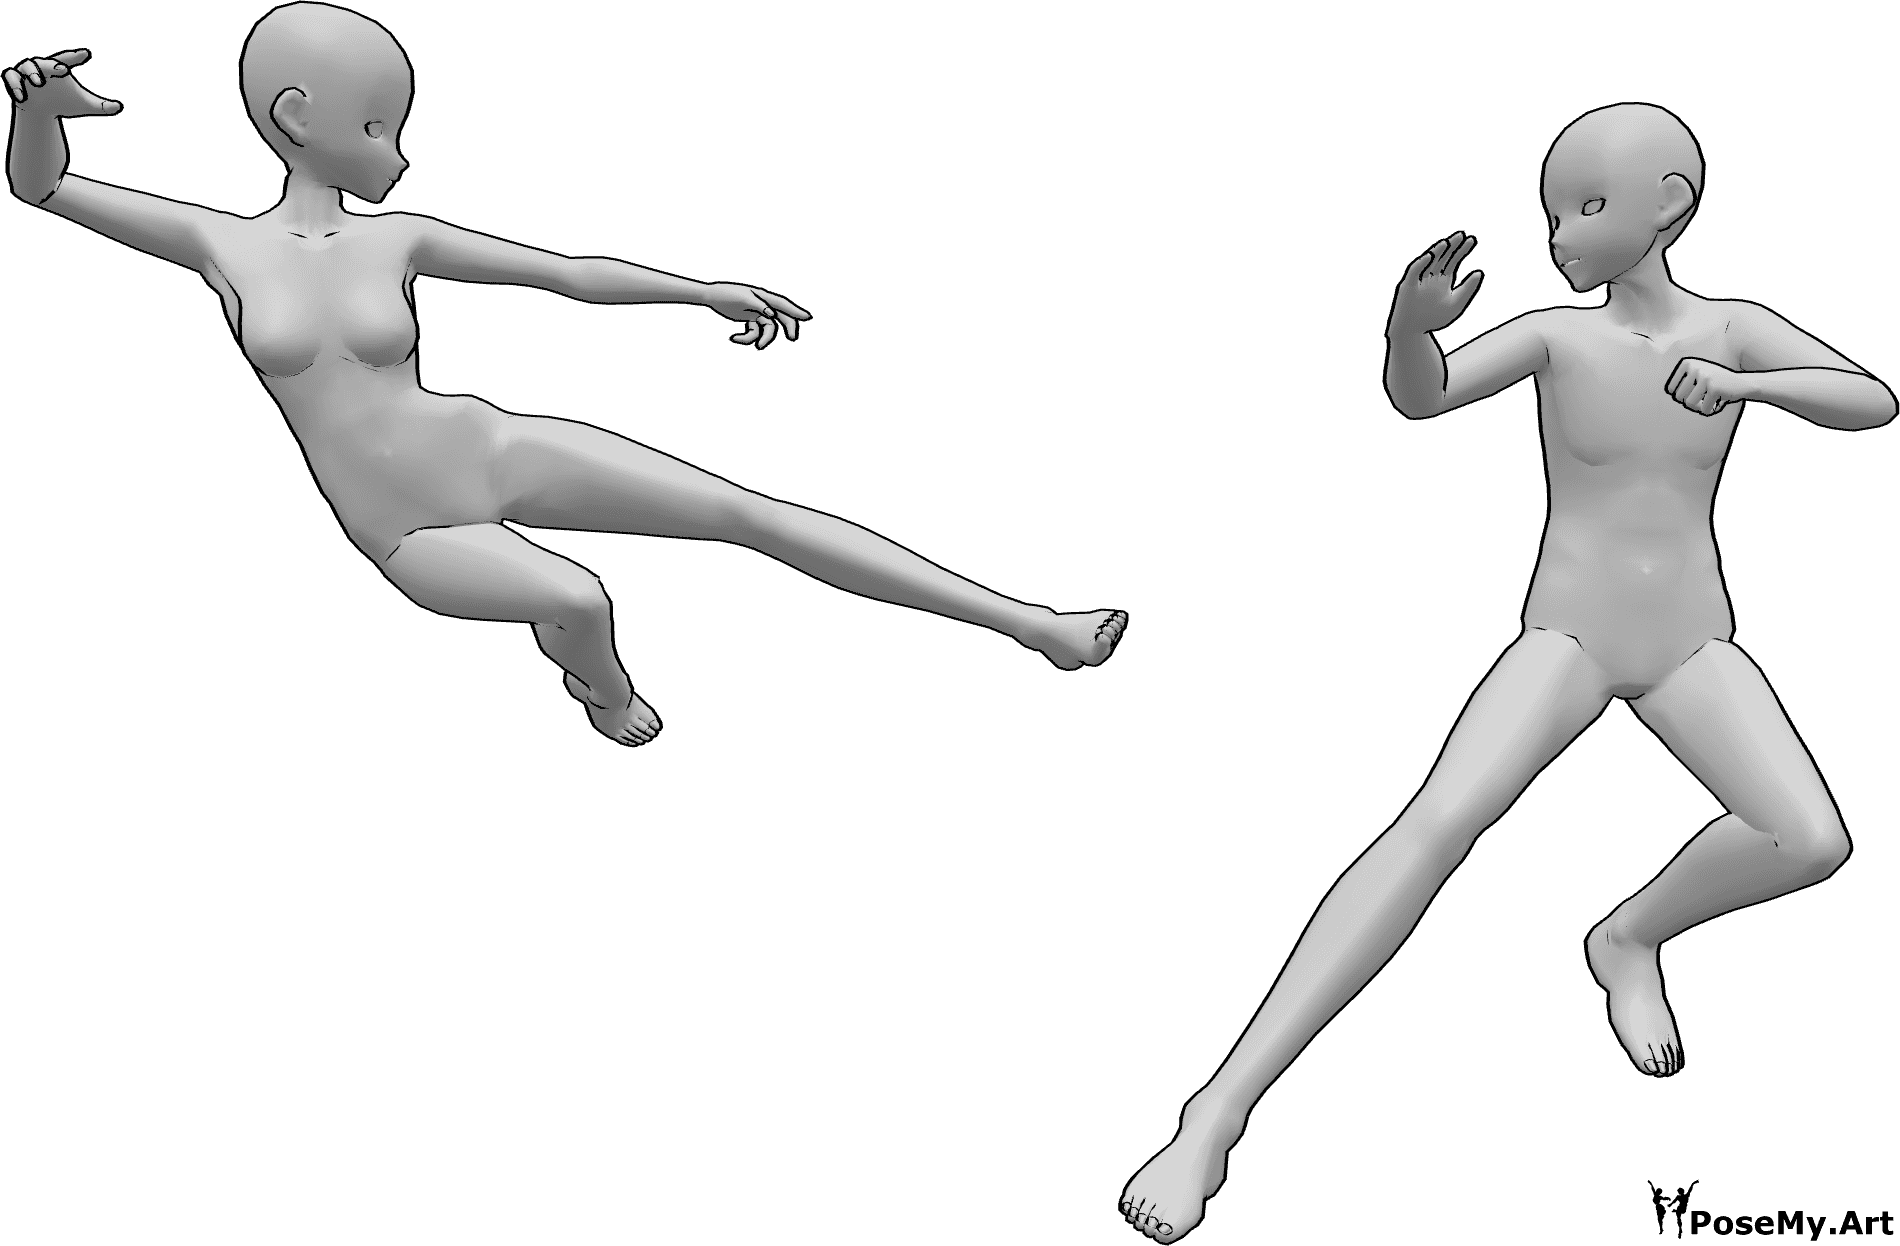 Posen-Referenz- Weibliche männliche Kampfpose - Anime Weibchen und Männchen kämpfen, das Weibchen will das Männchen treten